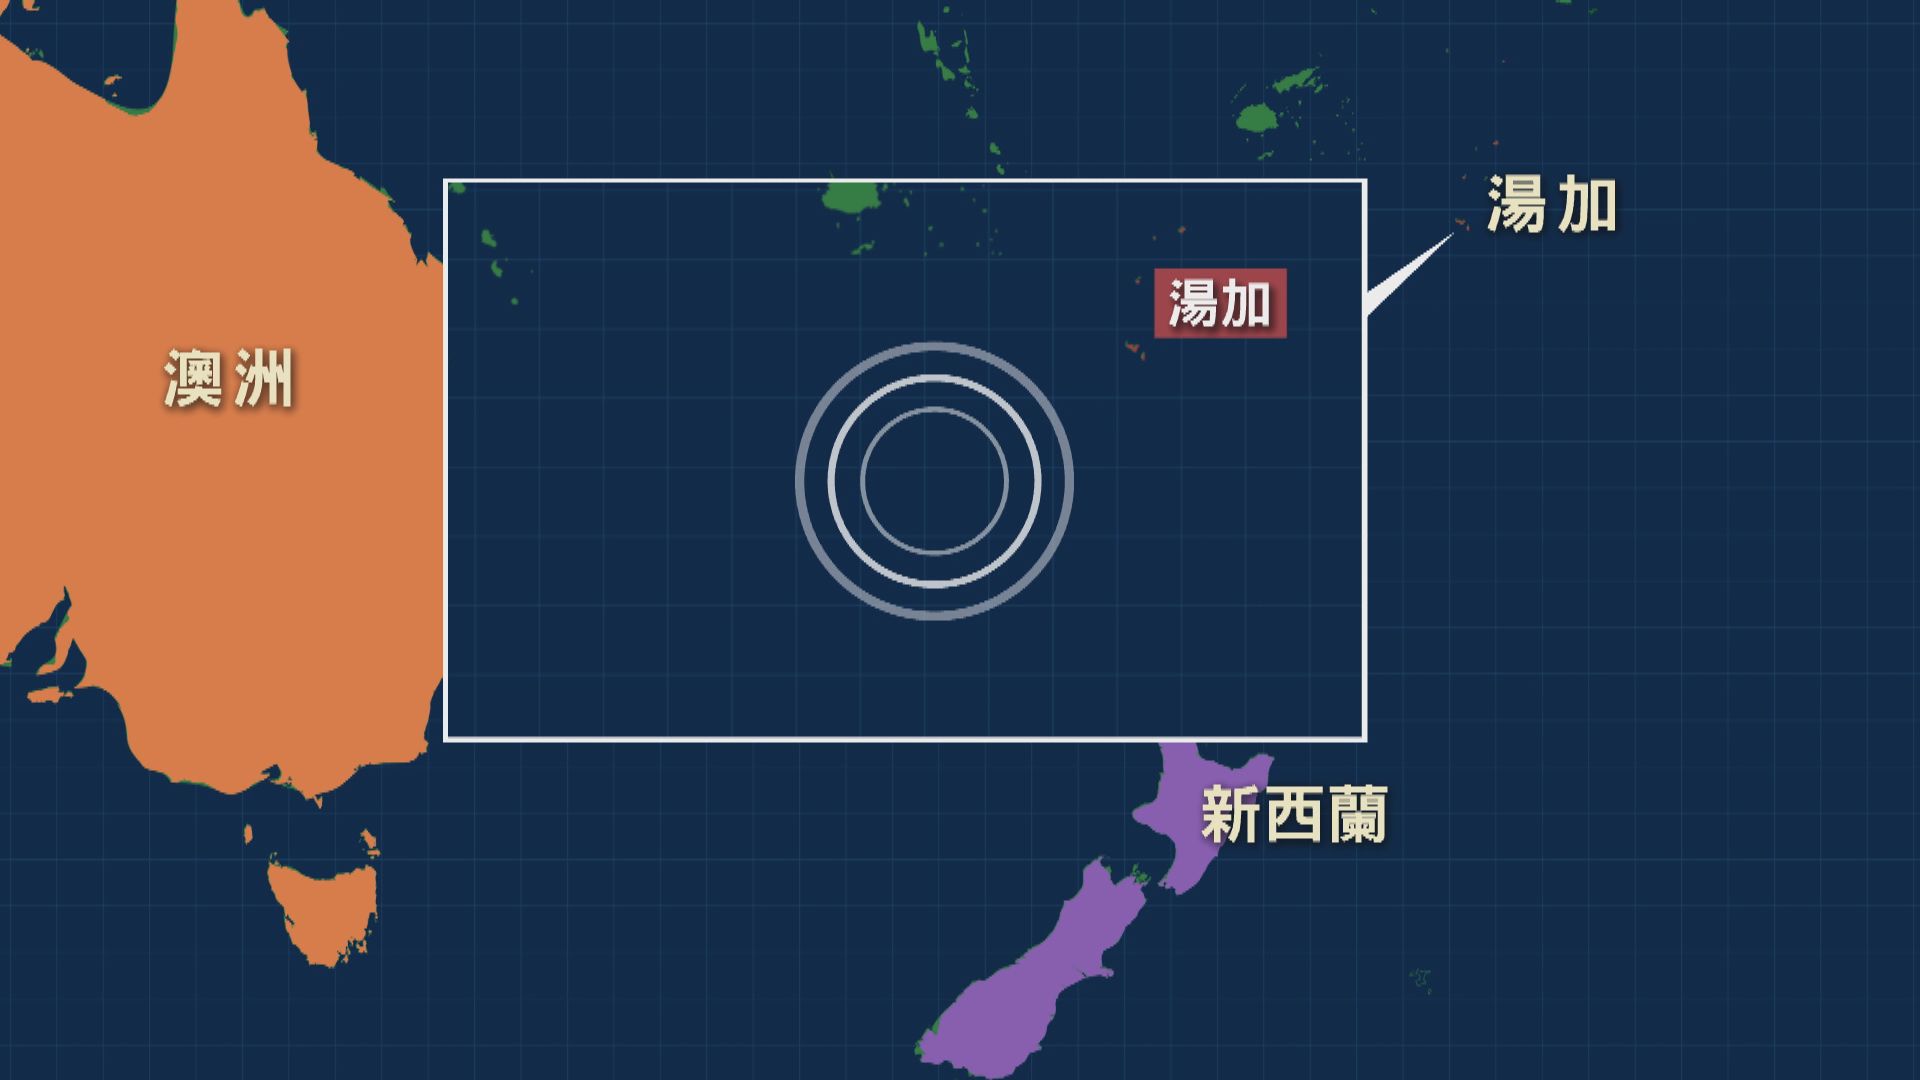 南太洋島國湯加附近海域發生7.2級地震